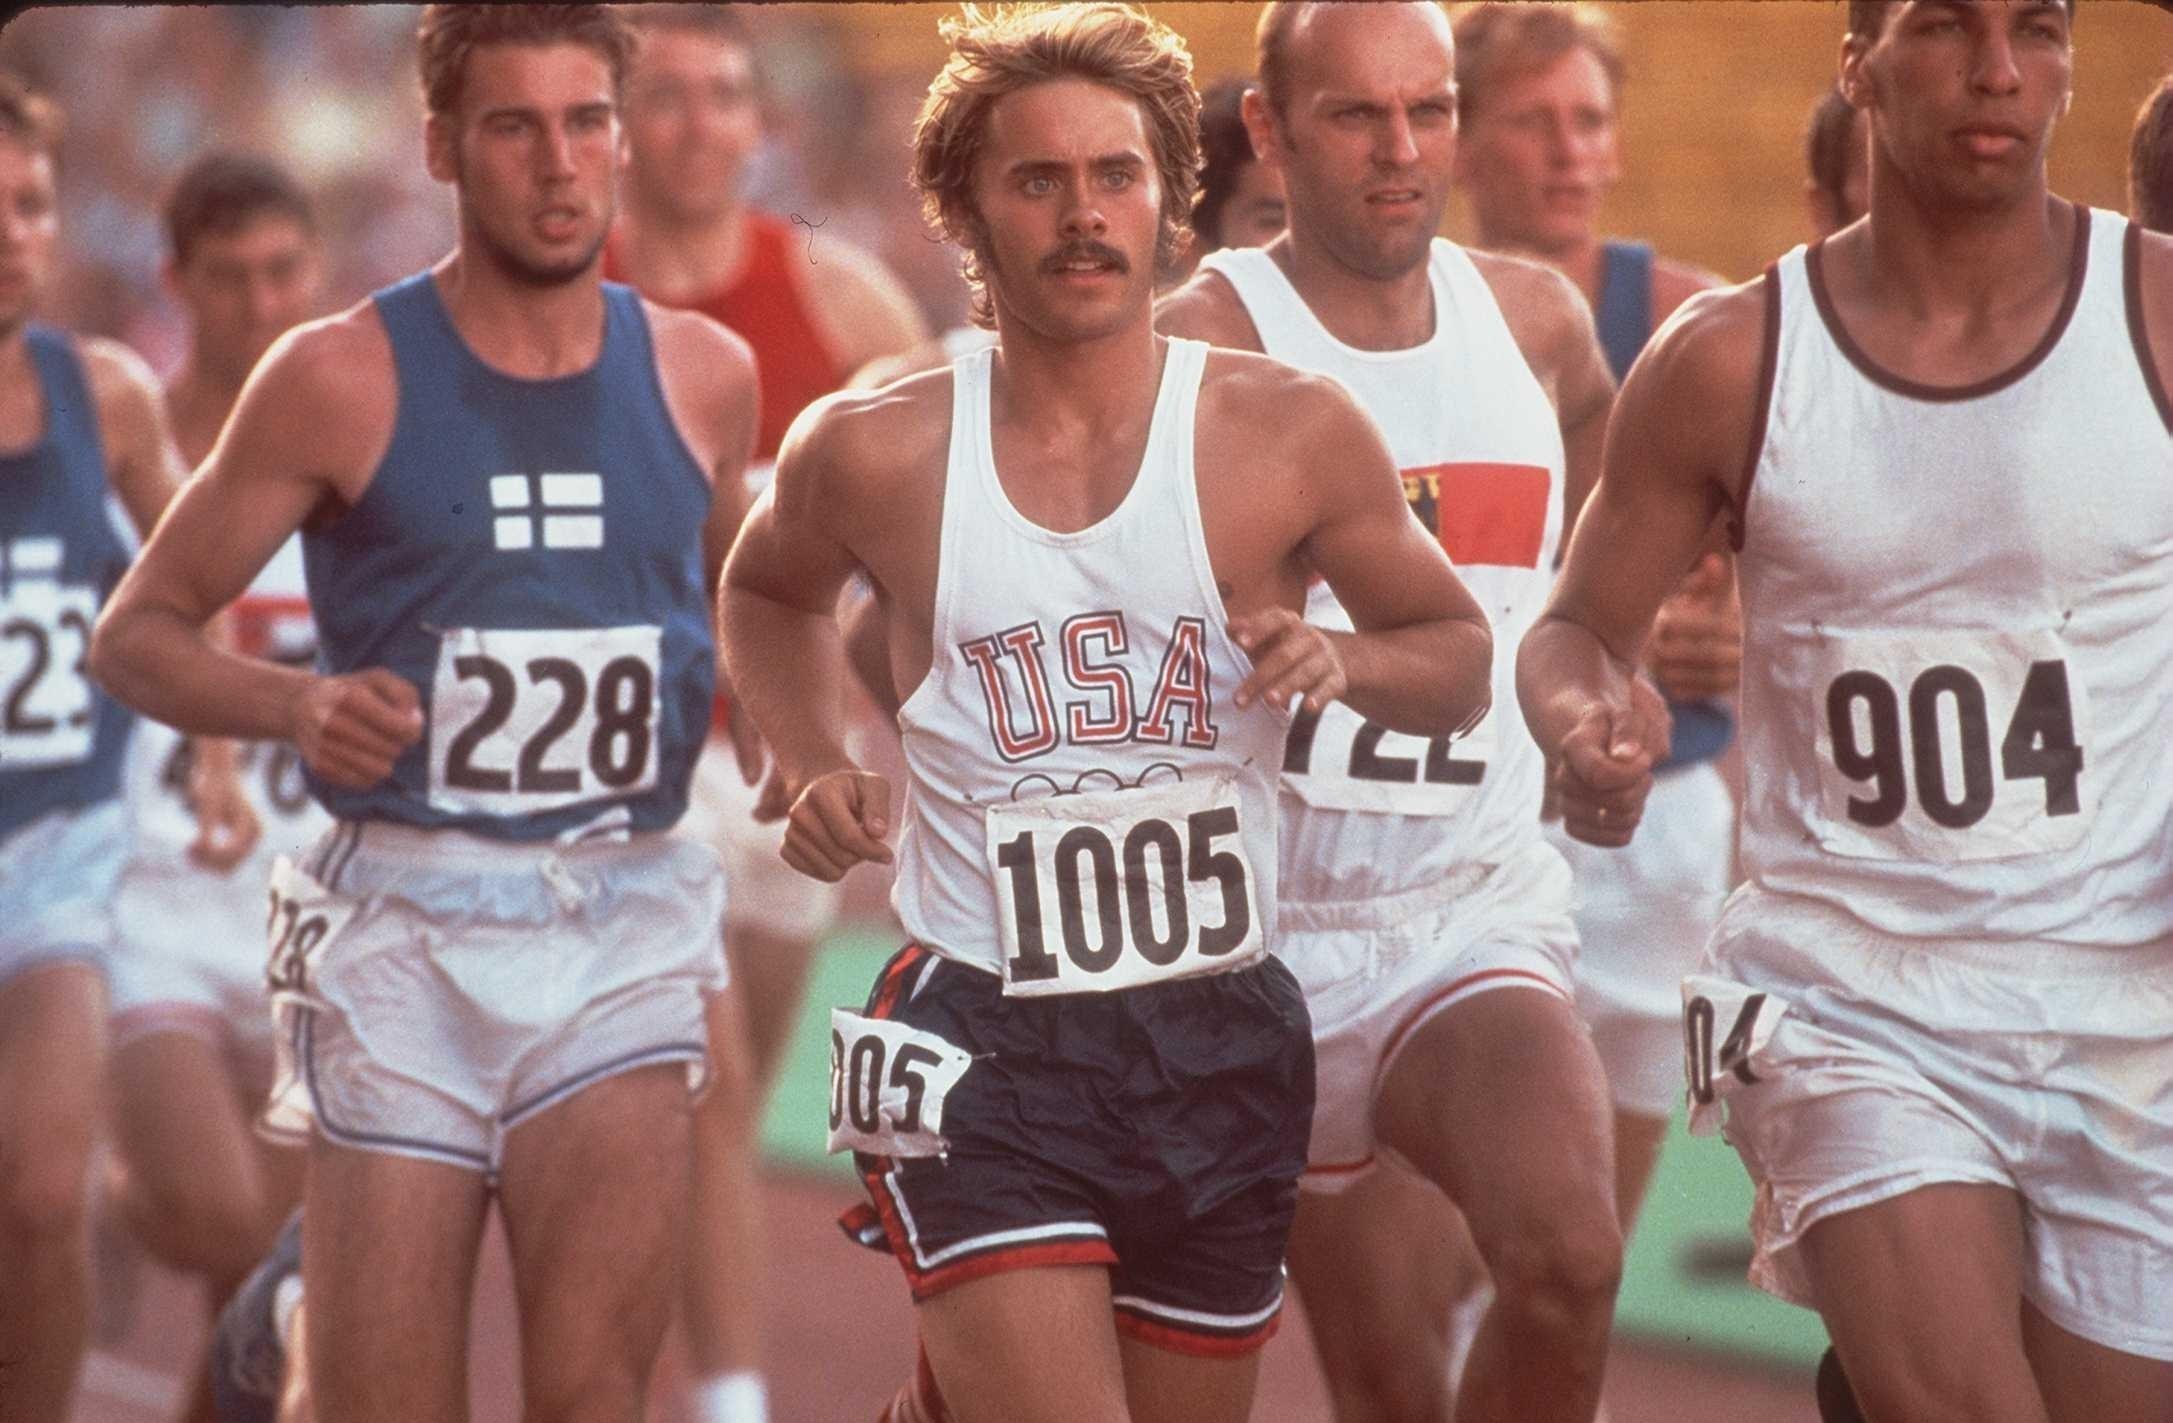 Стив Префонтейн: человек-беговая легенда, о котором говорят уже 40 лет